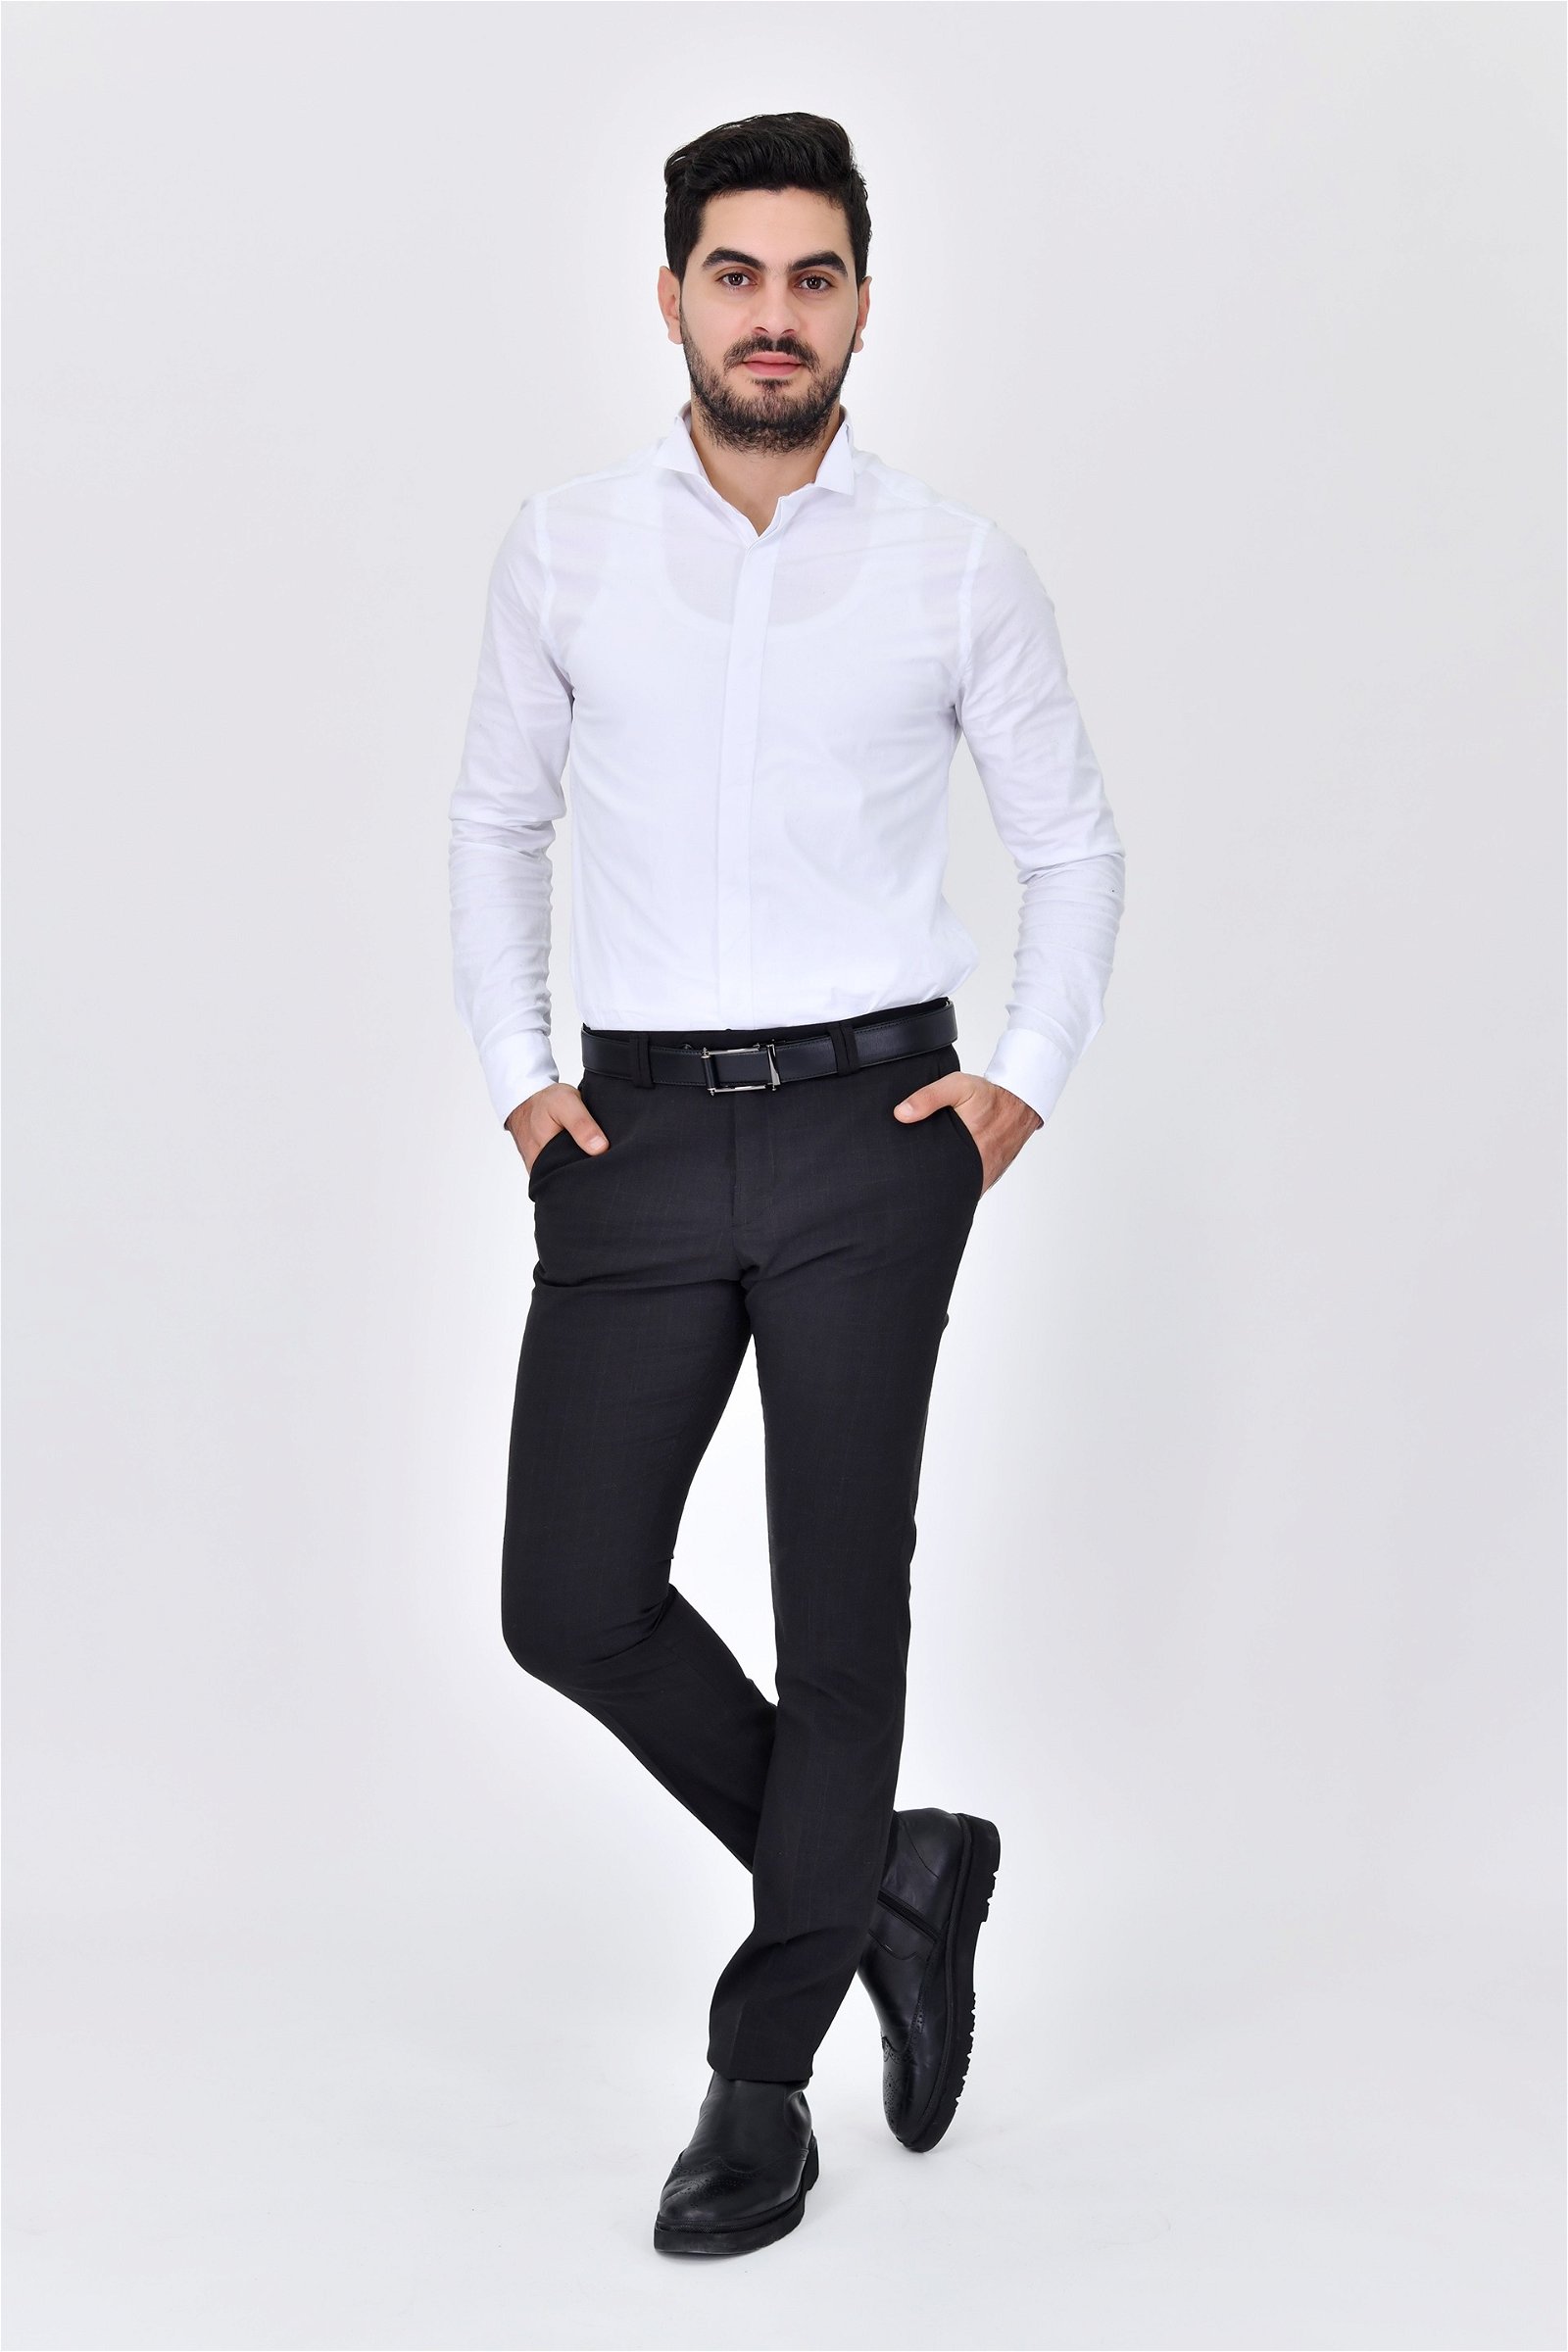 Chemise blanche pantalon noir